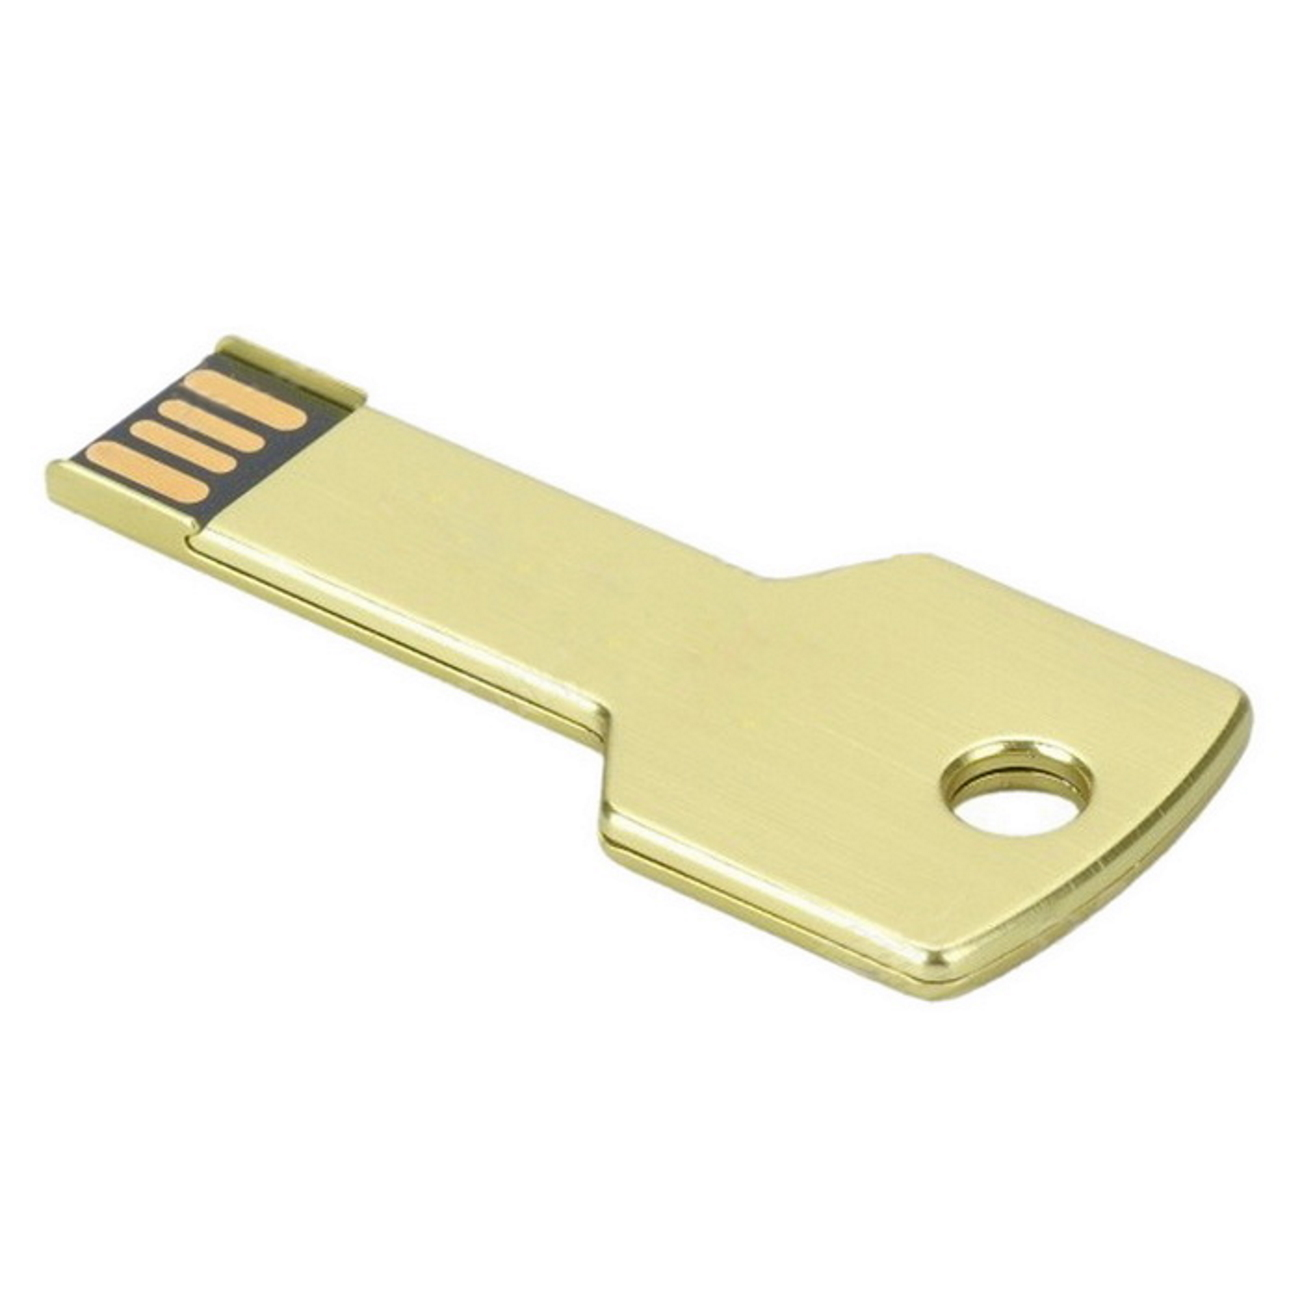 GB) USB (Gold, Gold USB-Stick Key 2 2GB GERMANY